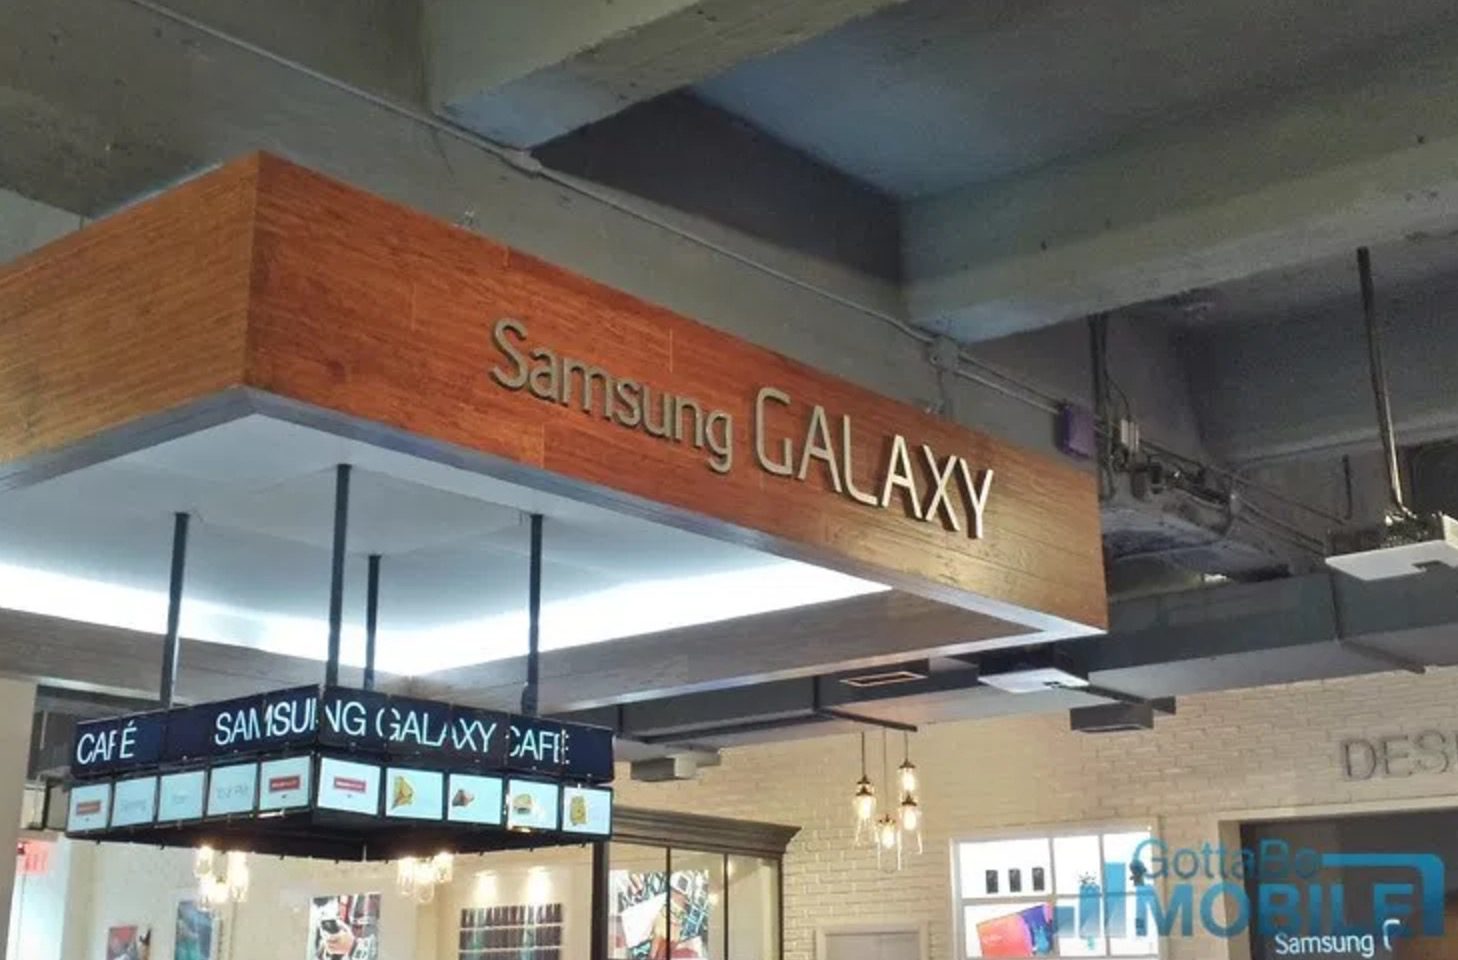 Las fotos funcionales del Galaxy S8 provocan grandes cambios